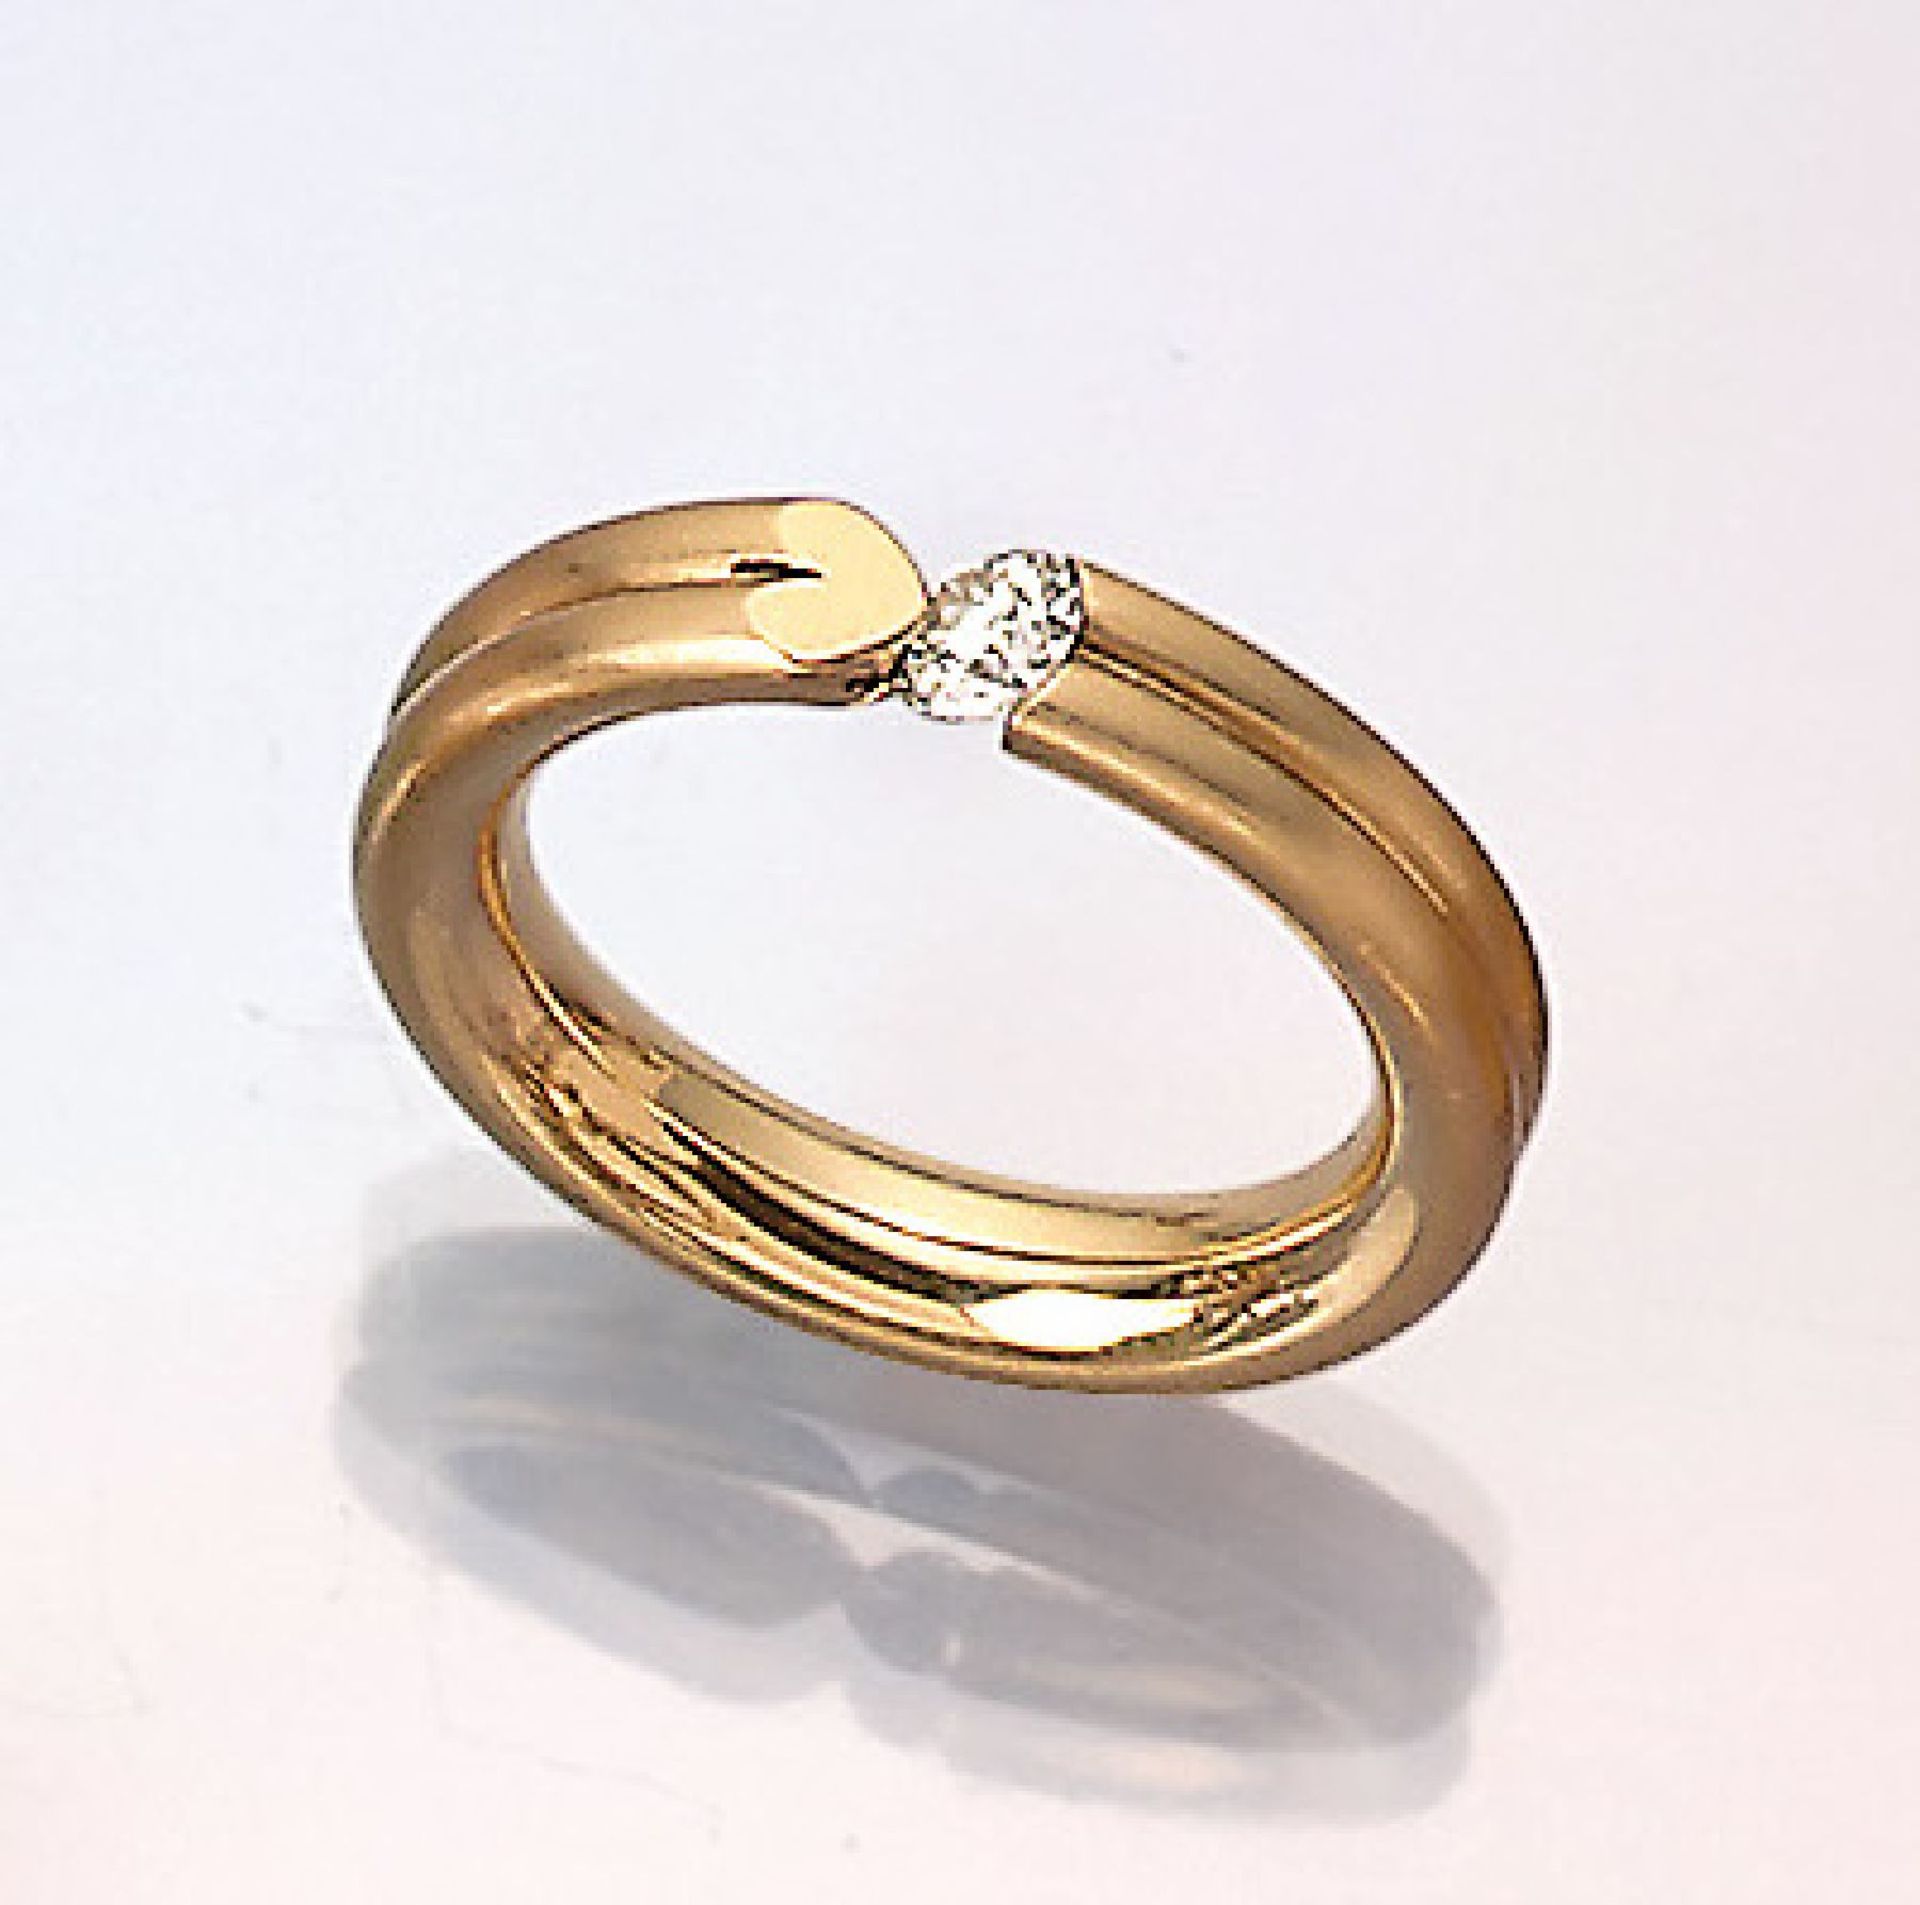 18 kt Gold BUNZ-Ring mit Brillant, GG 750/000, Brillant 0.28 ct (grav.) Weiß/vs, Ringschiene